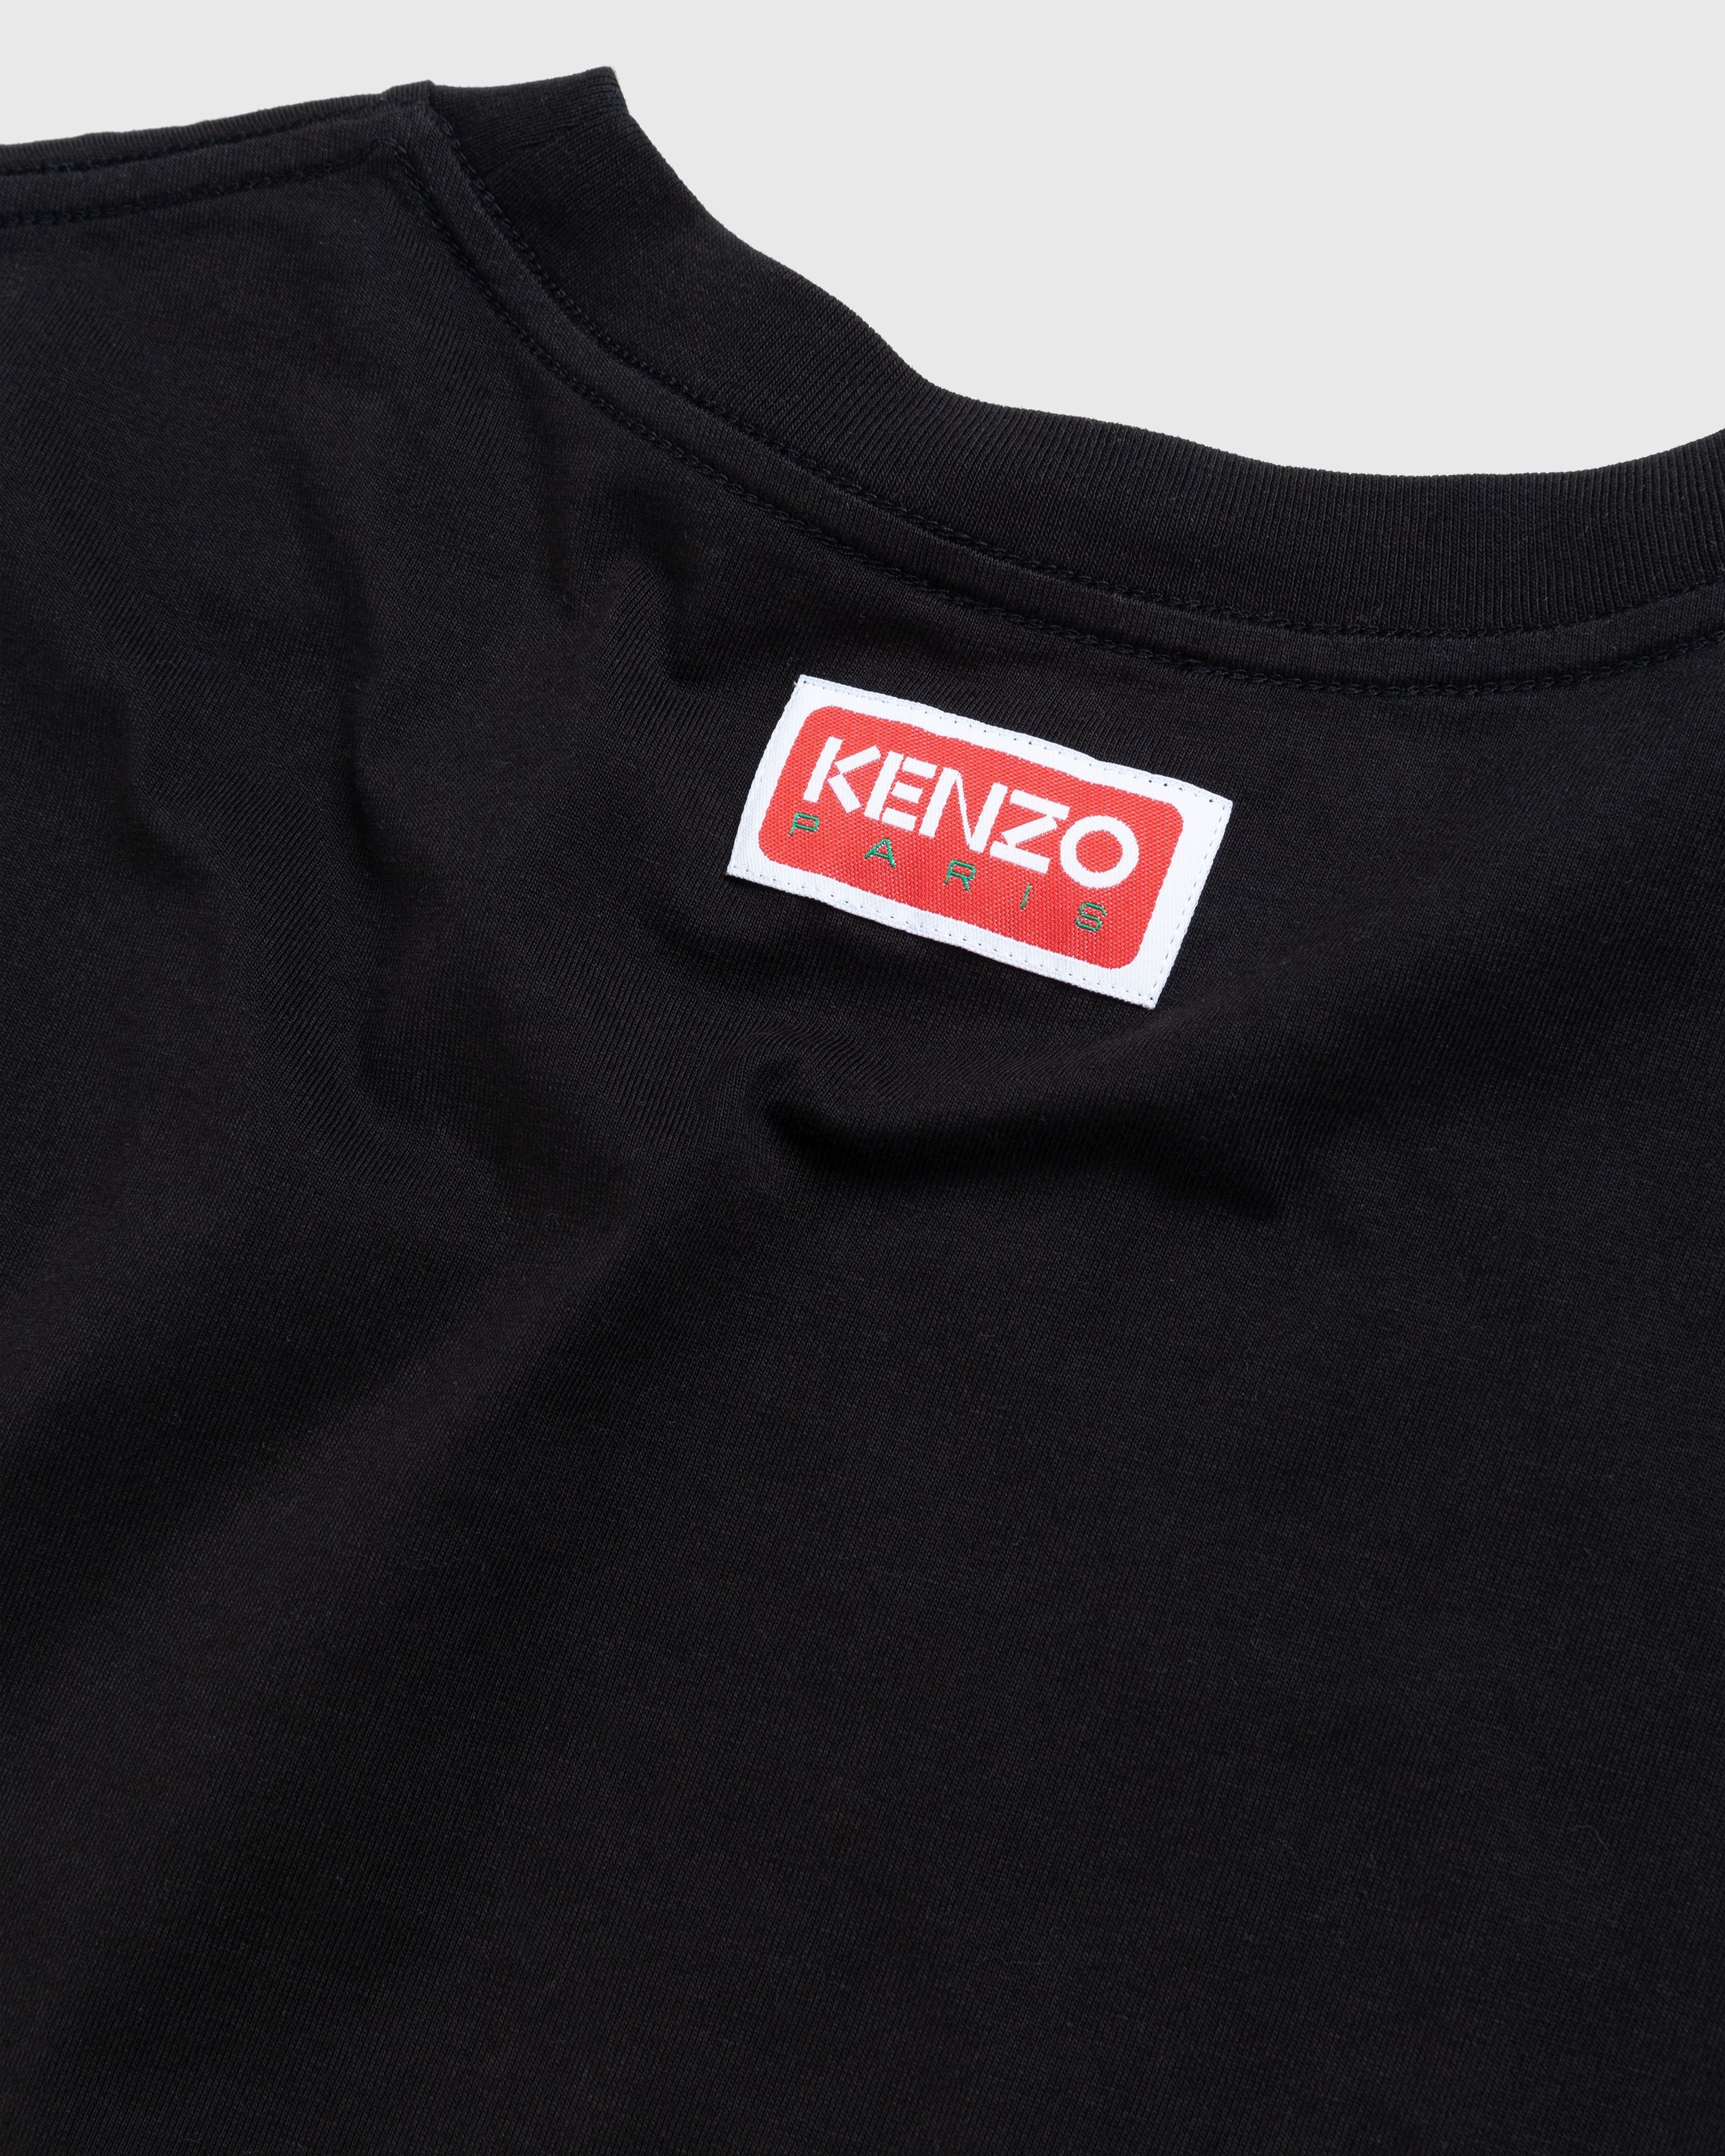 KENZO BY NIGO MAN BLACK T-SHIRTS - KENZO BY NIGO - T-SHIRTS